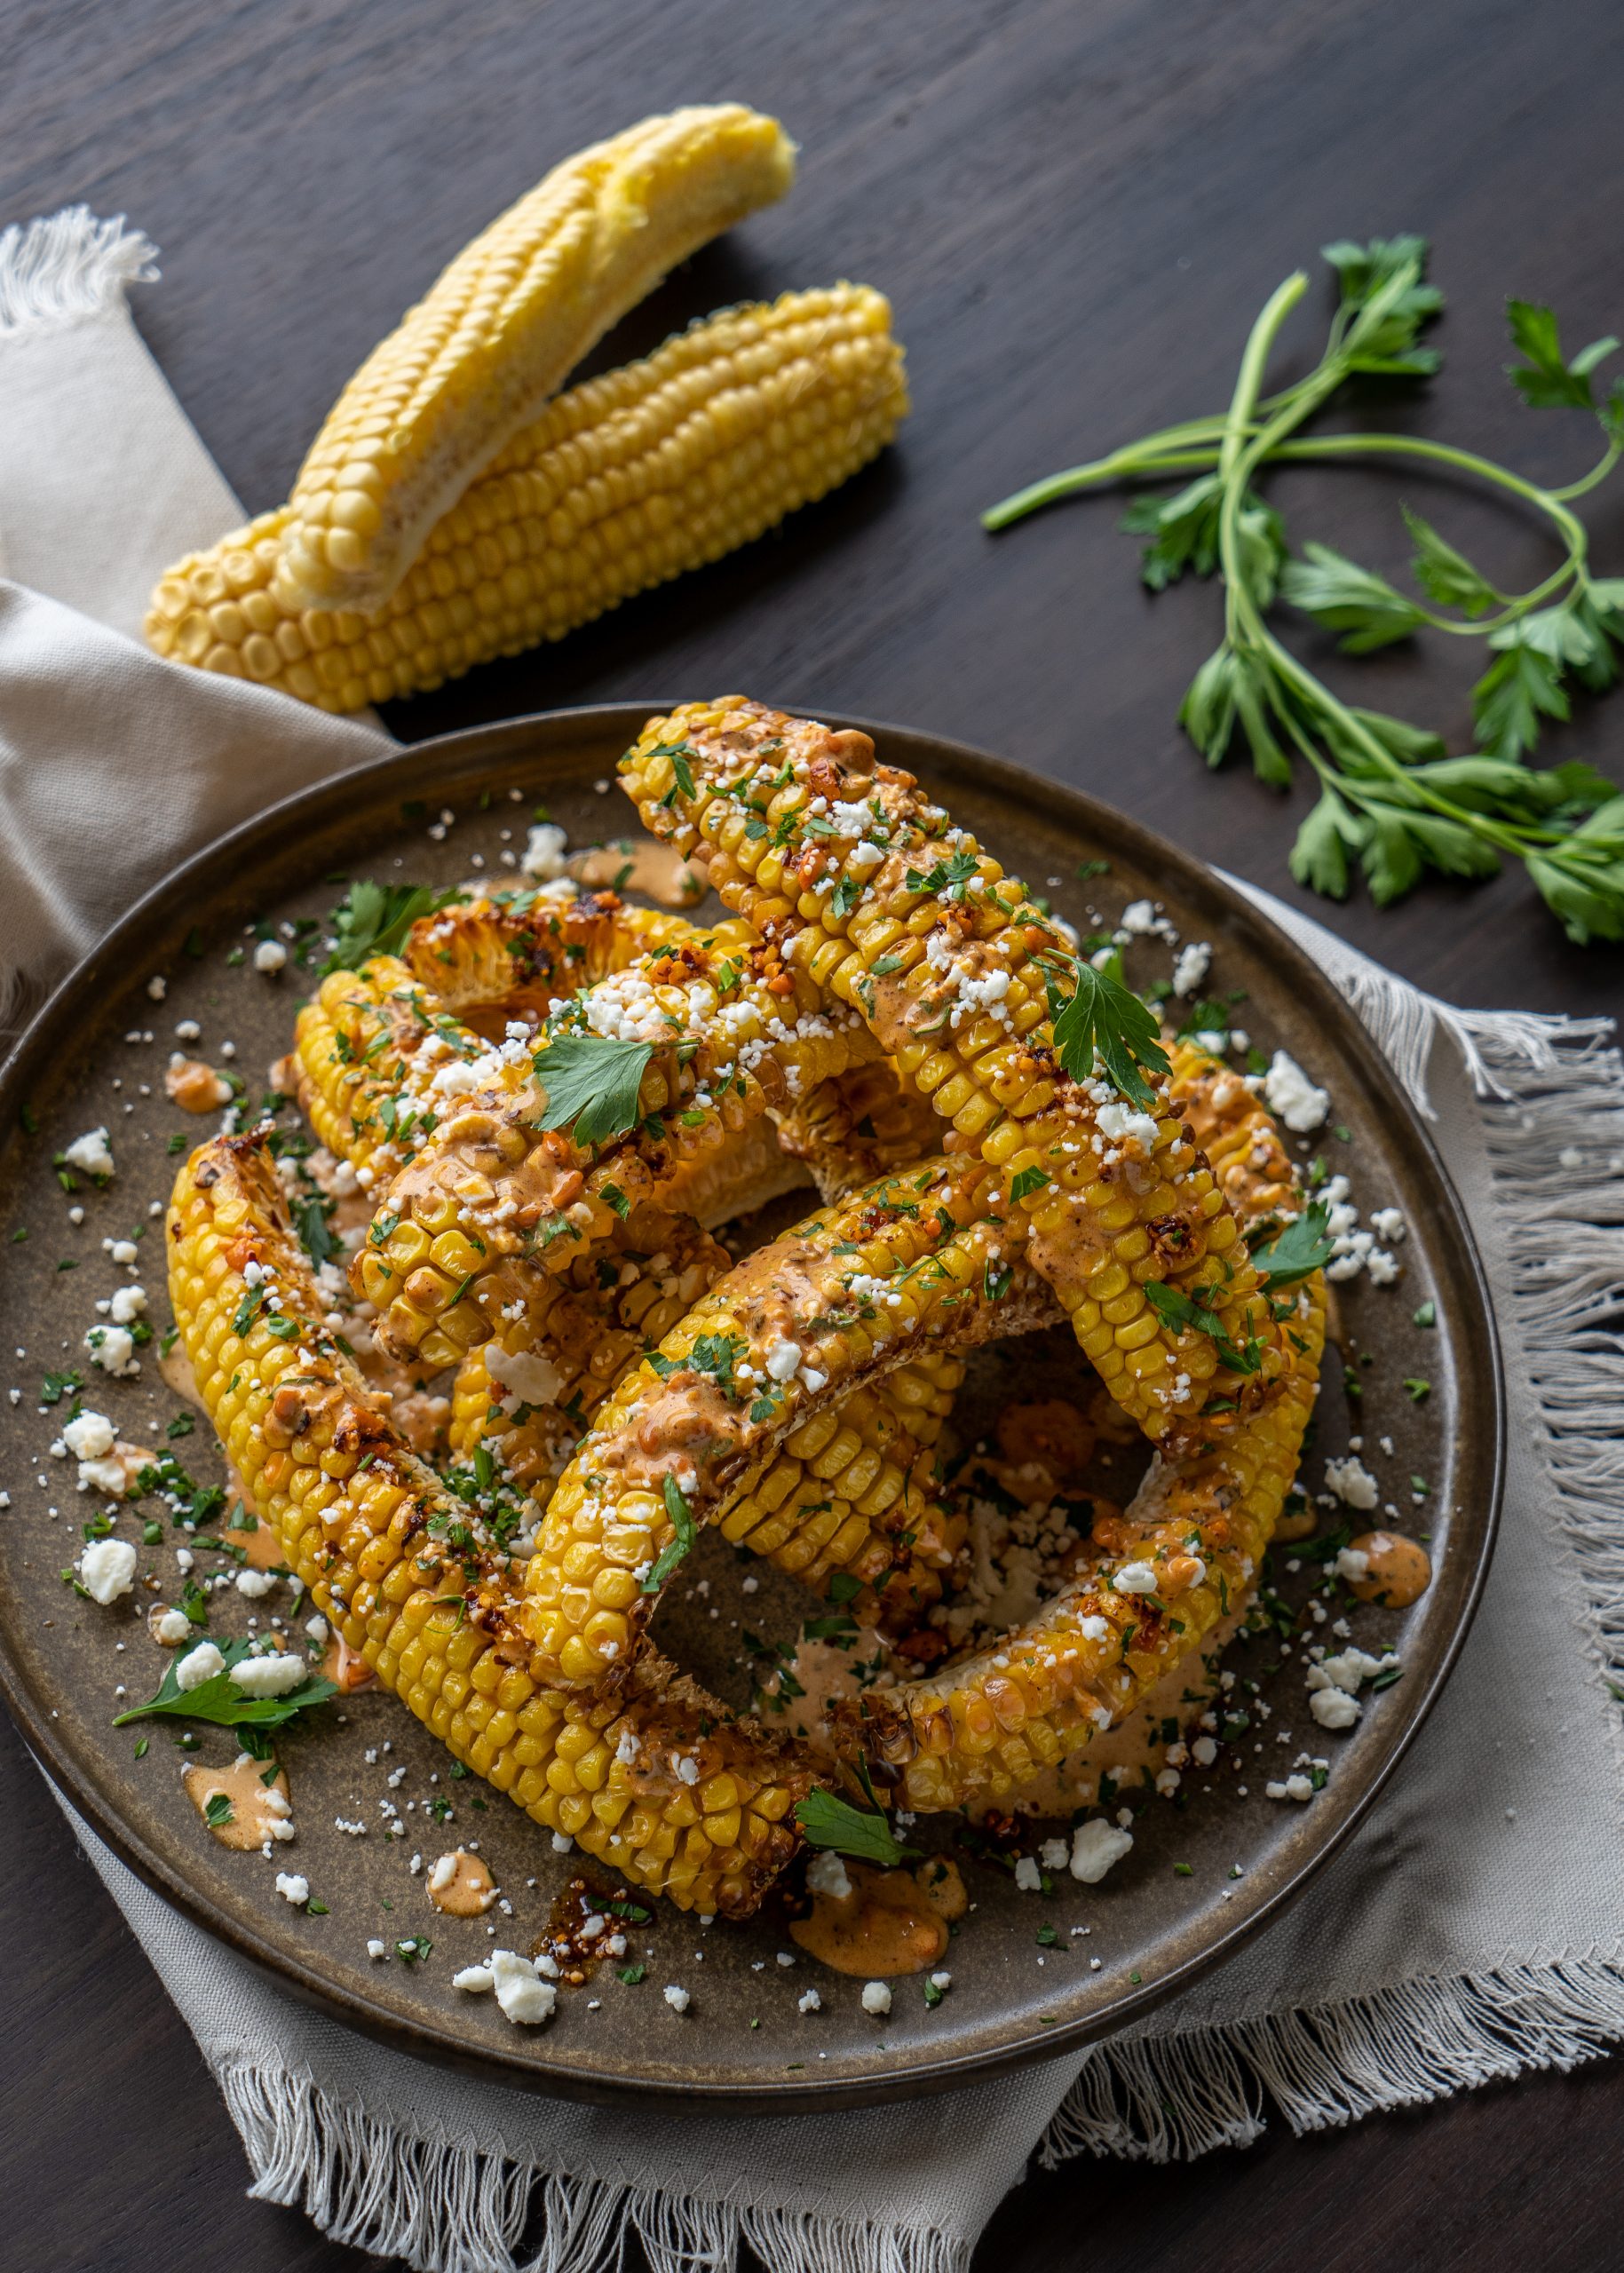 Receta de Corn ribs o costillitas de elote - Instant Blog